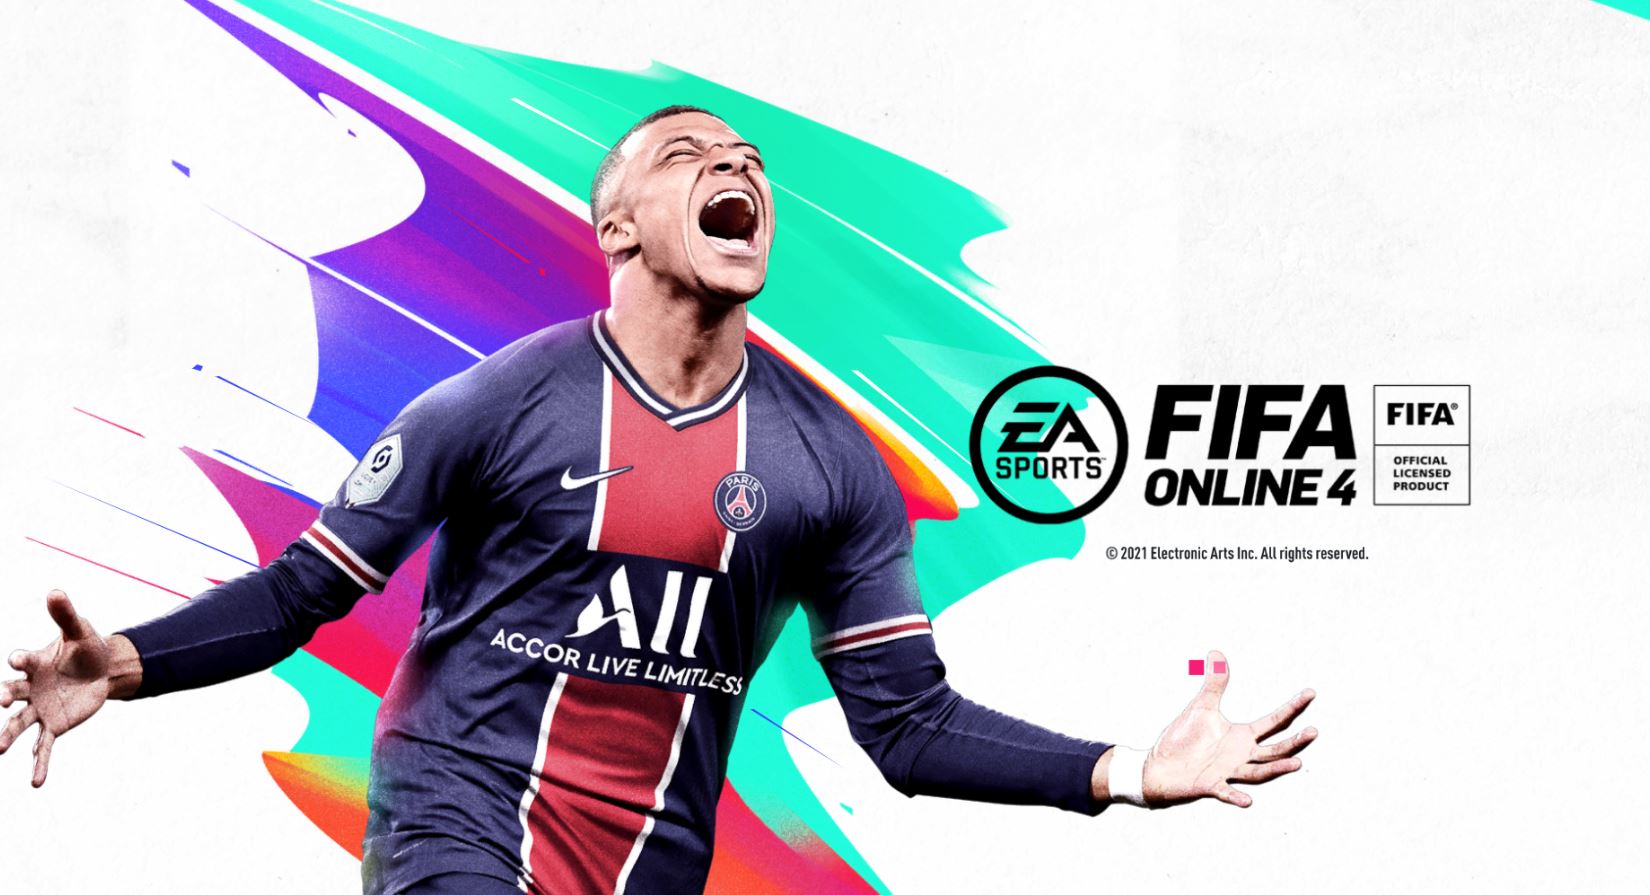 Wir haben die neuesten Promo-Codes für Spieler angekündigt, die nach einem Promo-Code für das 2018 veröffentlichte Spiel FIFA Online 4 suchen.